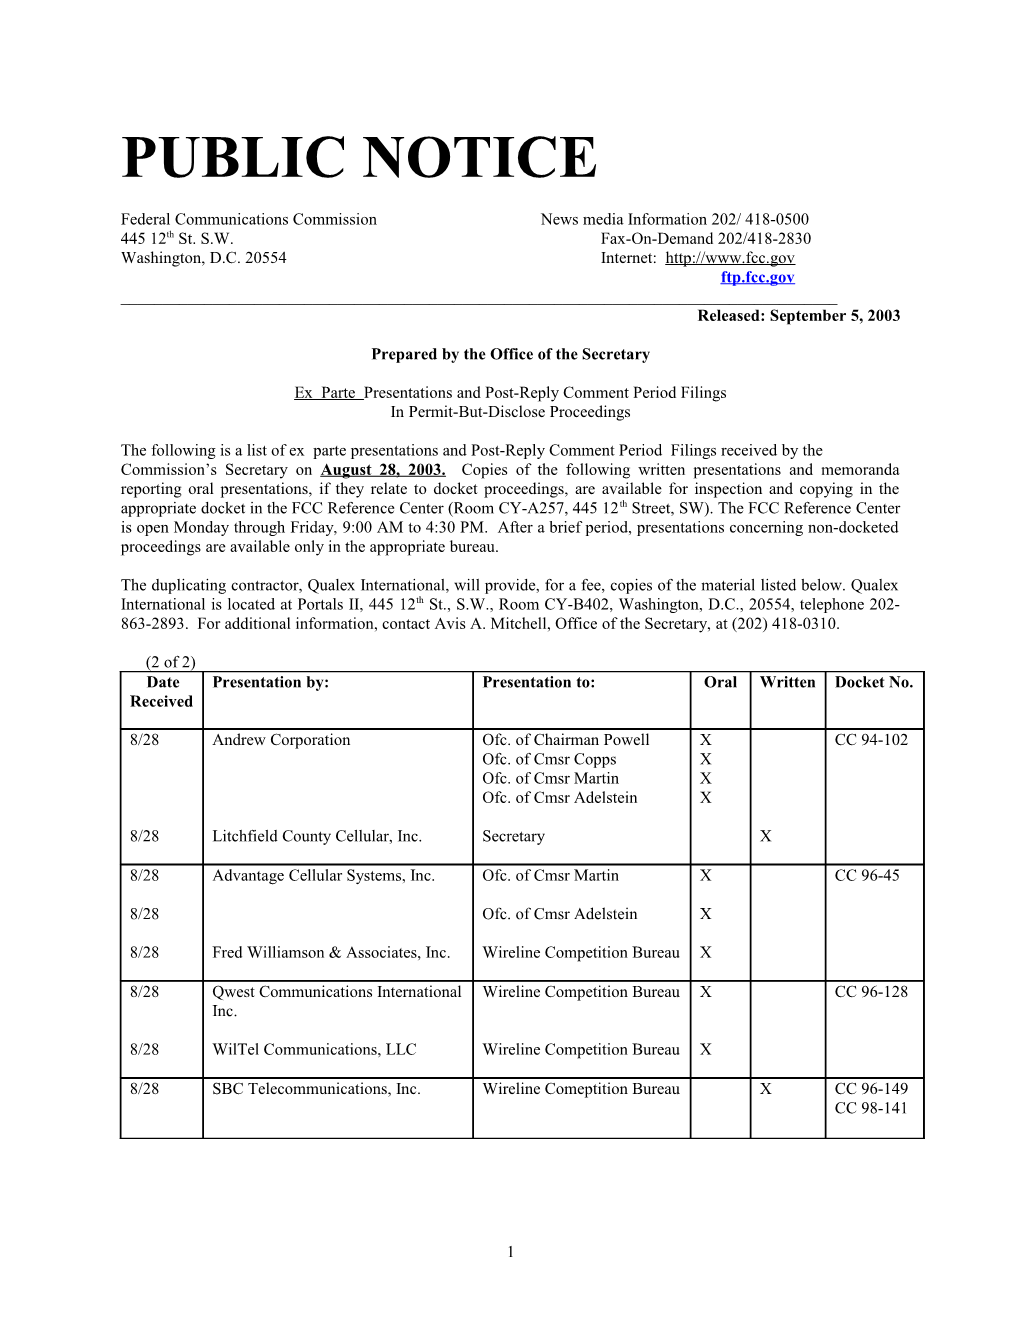 Public Notice s1